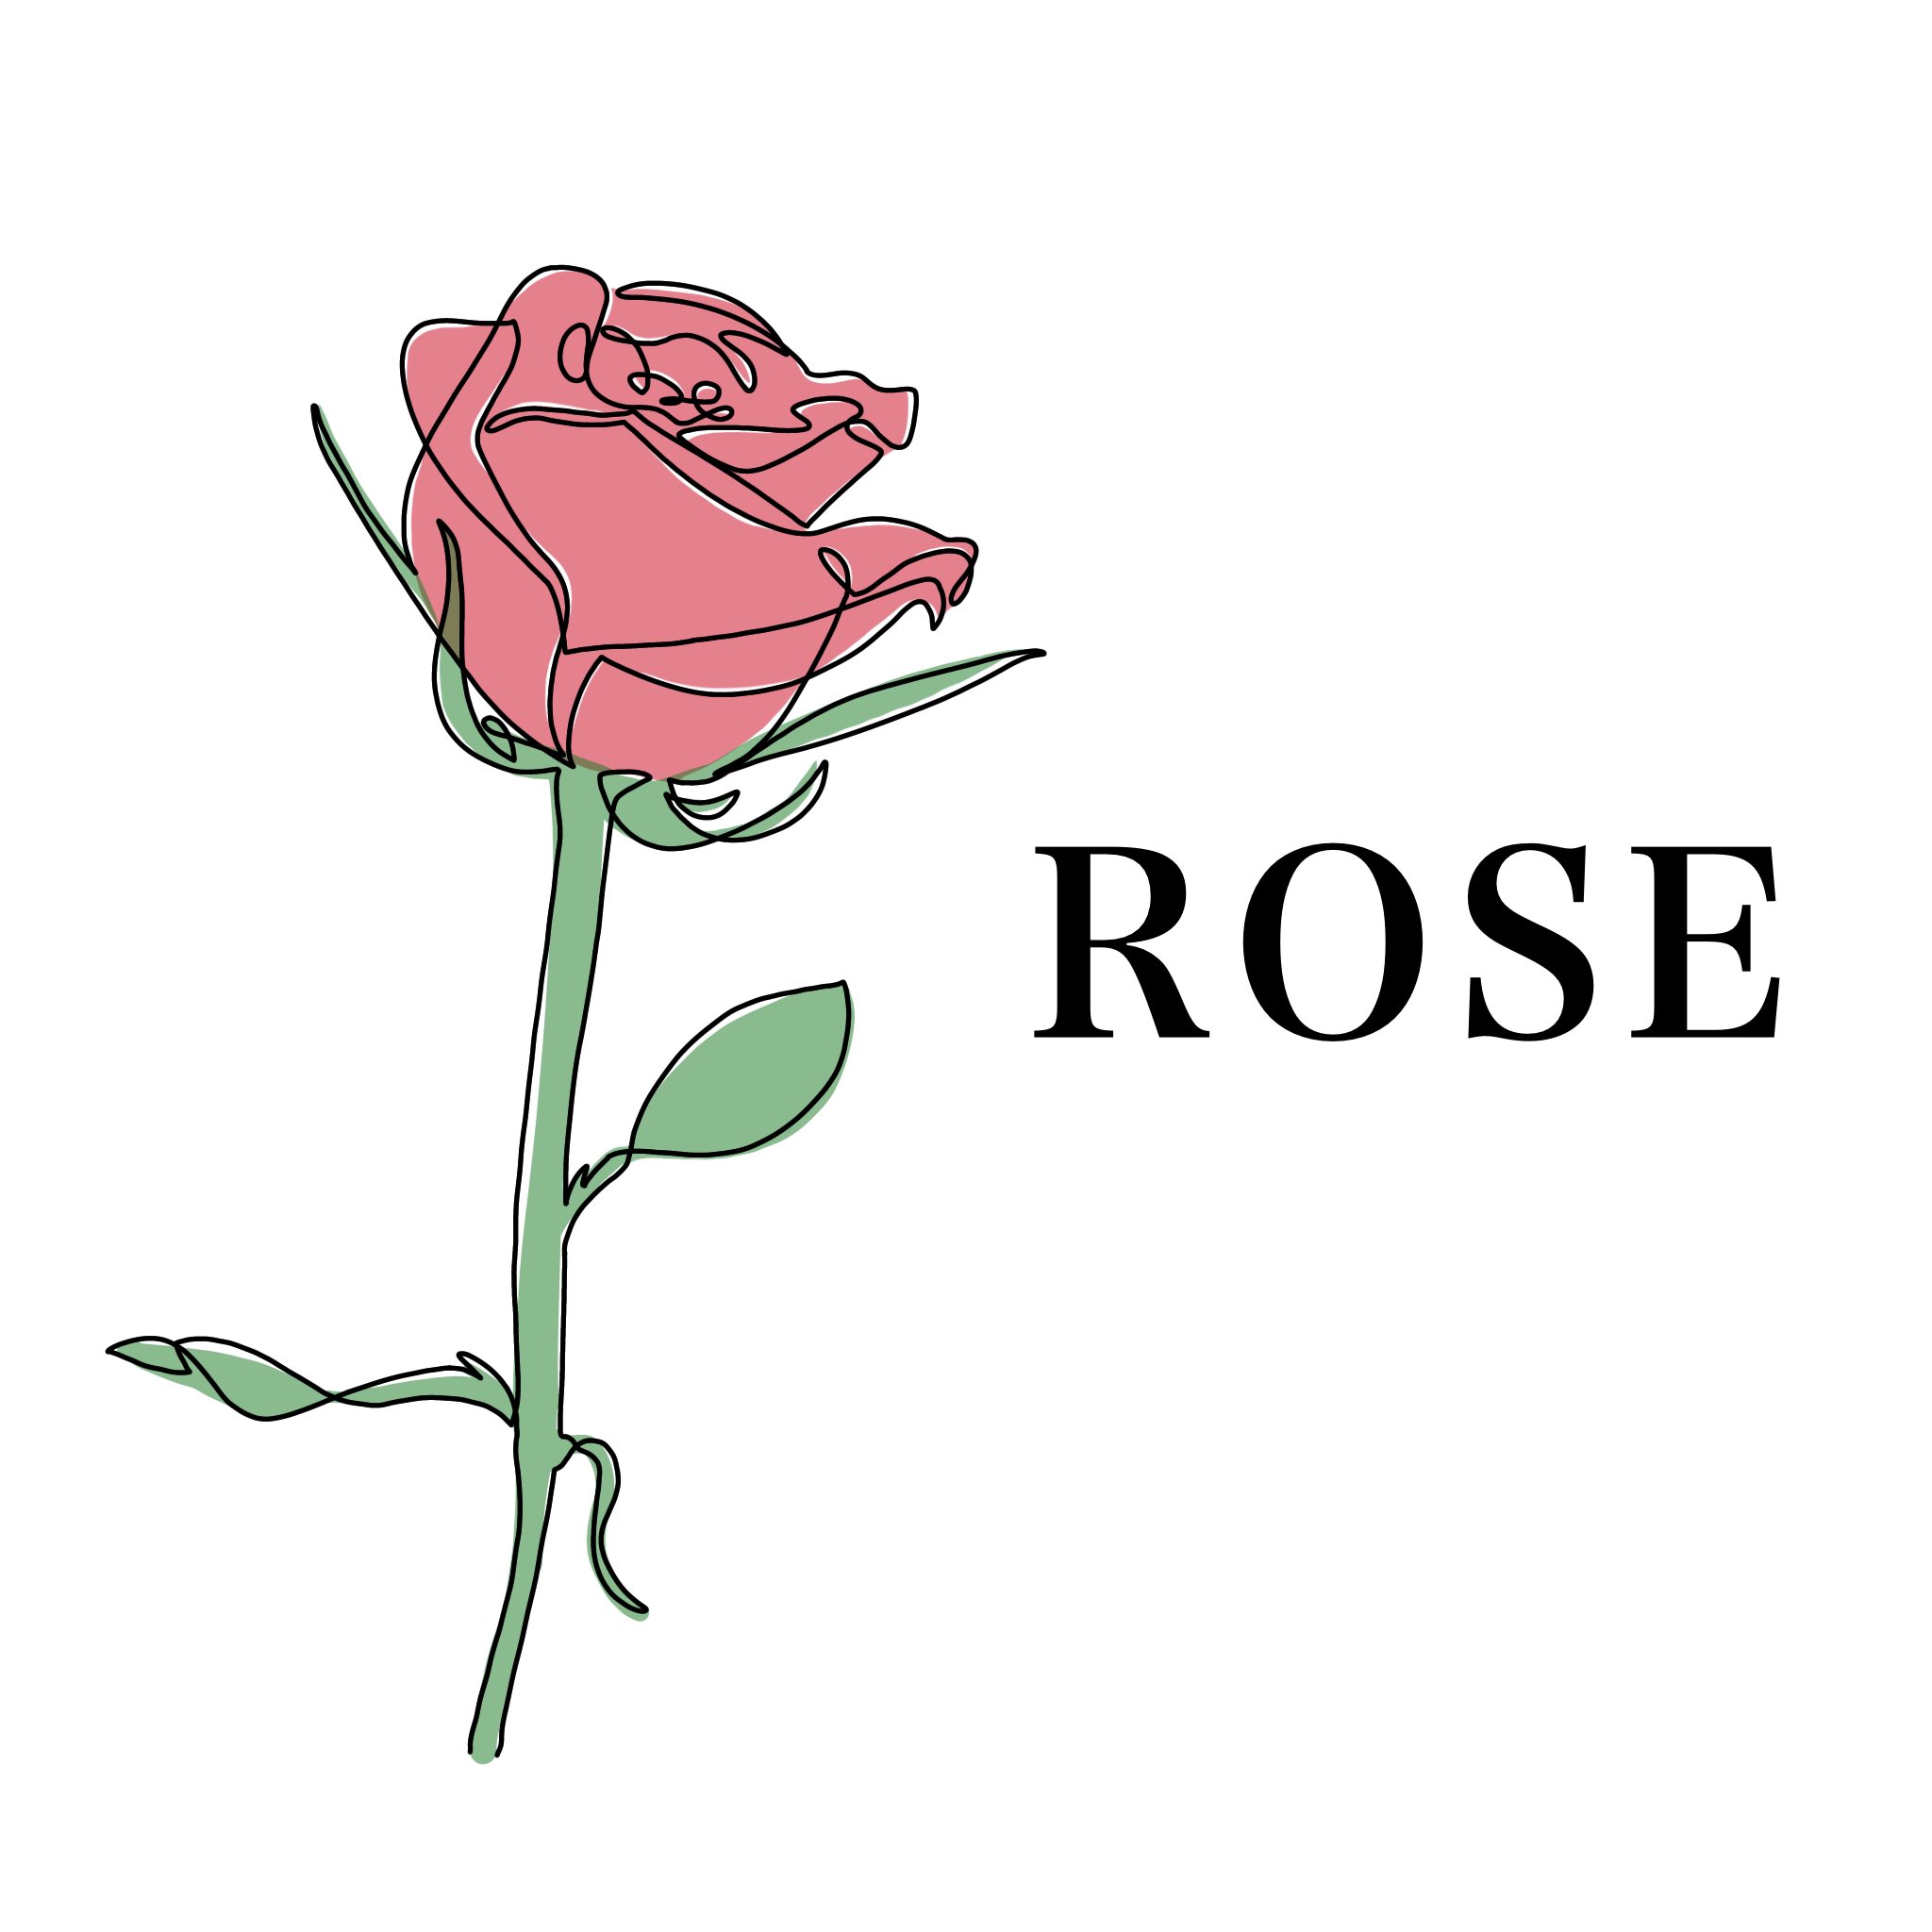 りんりん 一筆書き風 Rose 無断転載禁止 保存はご自由にどうぞ 線画 一筆書き 一筆描き イラスト シンプル おしゃれ 薔薇 バラ Rose 絵描きさんと繋がりたい イラスト好きな人と繋がりたい